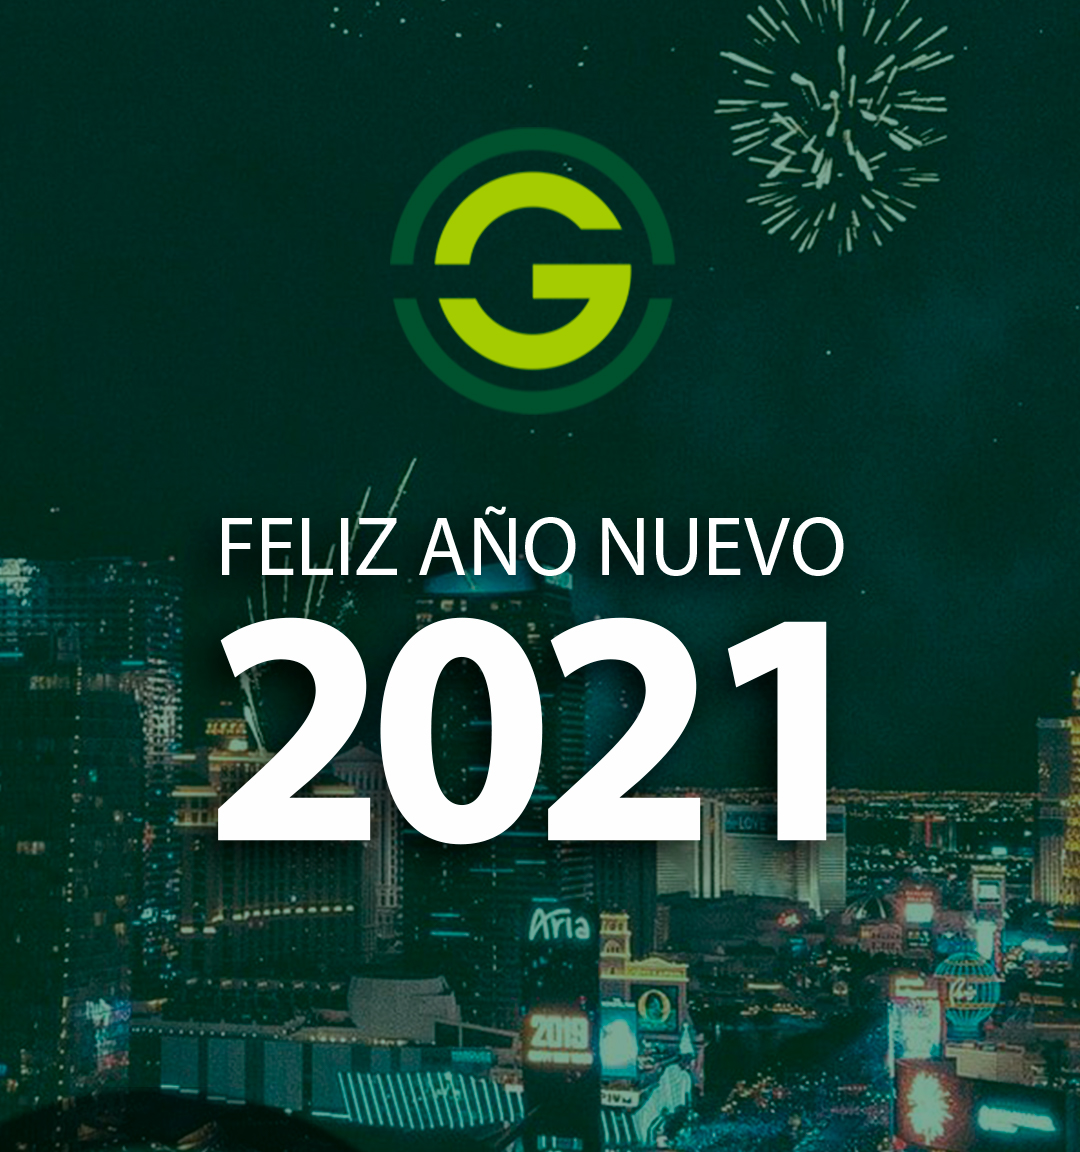 Les deseamos de parte de todo el equipo de Grupo Geon un feliz 2021